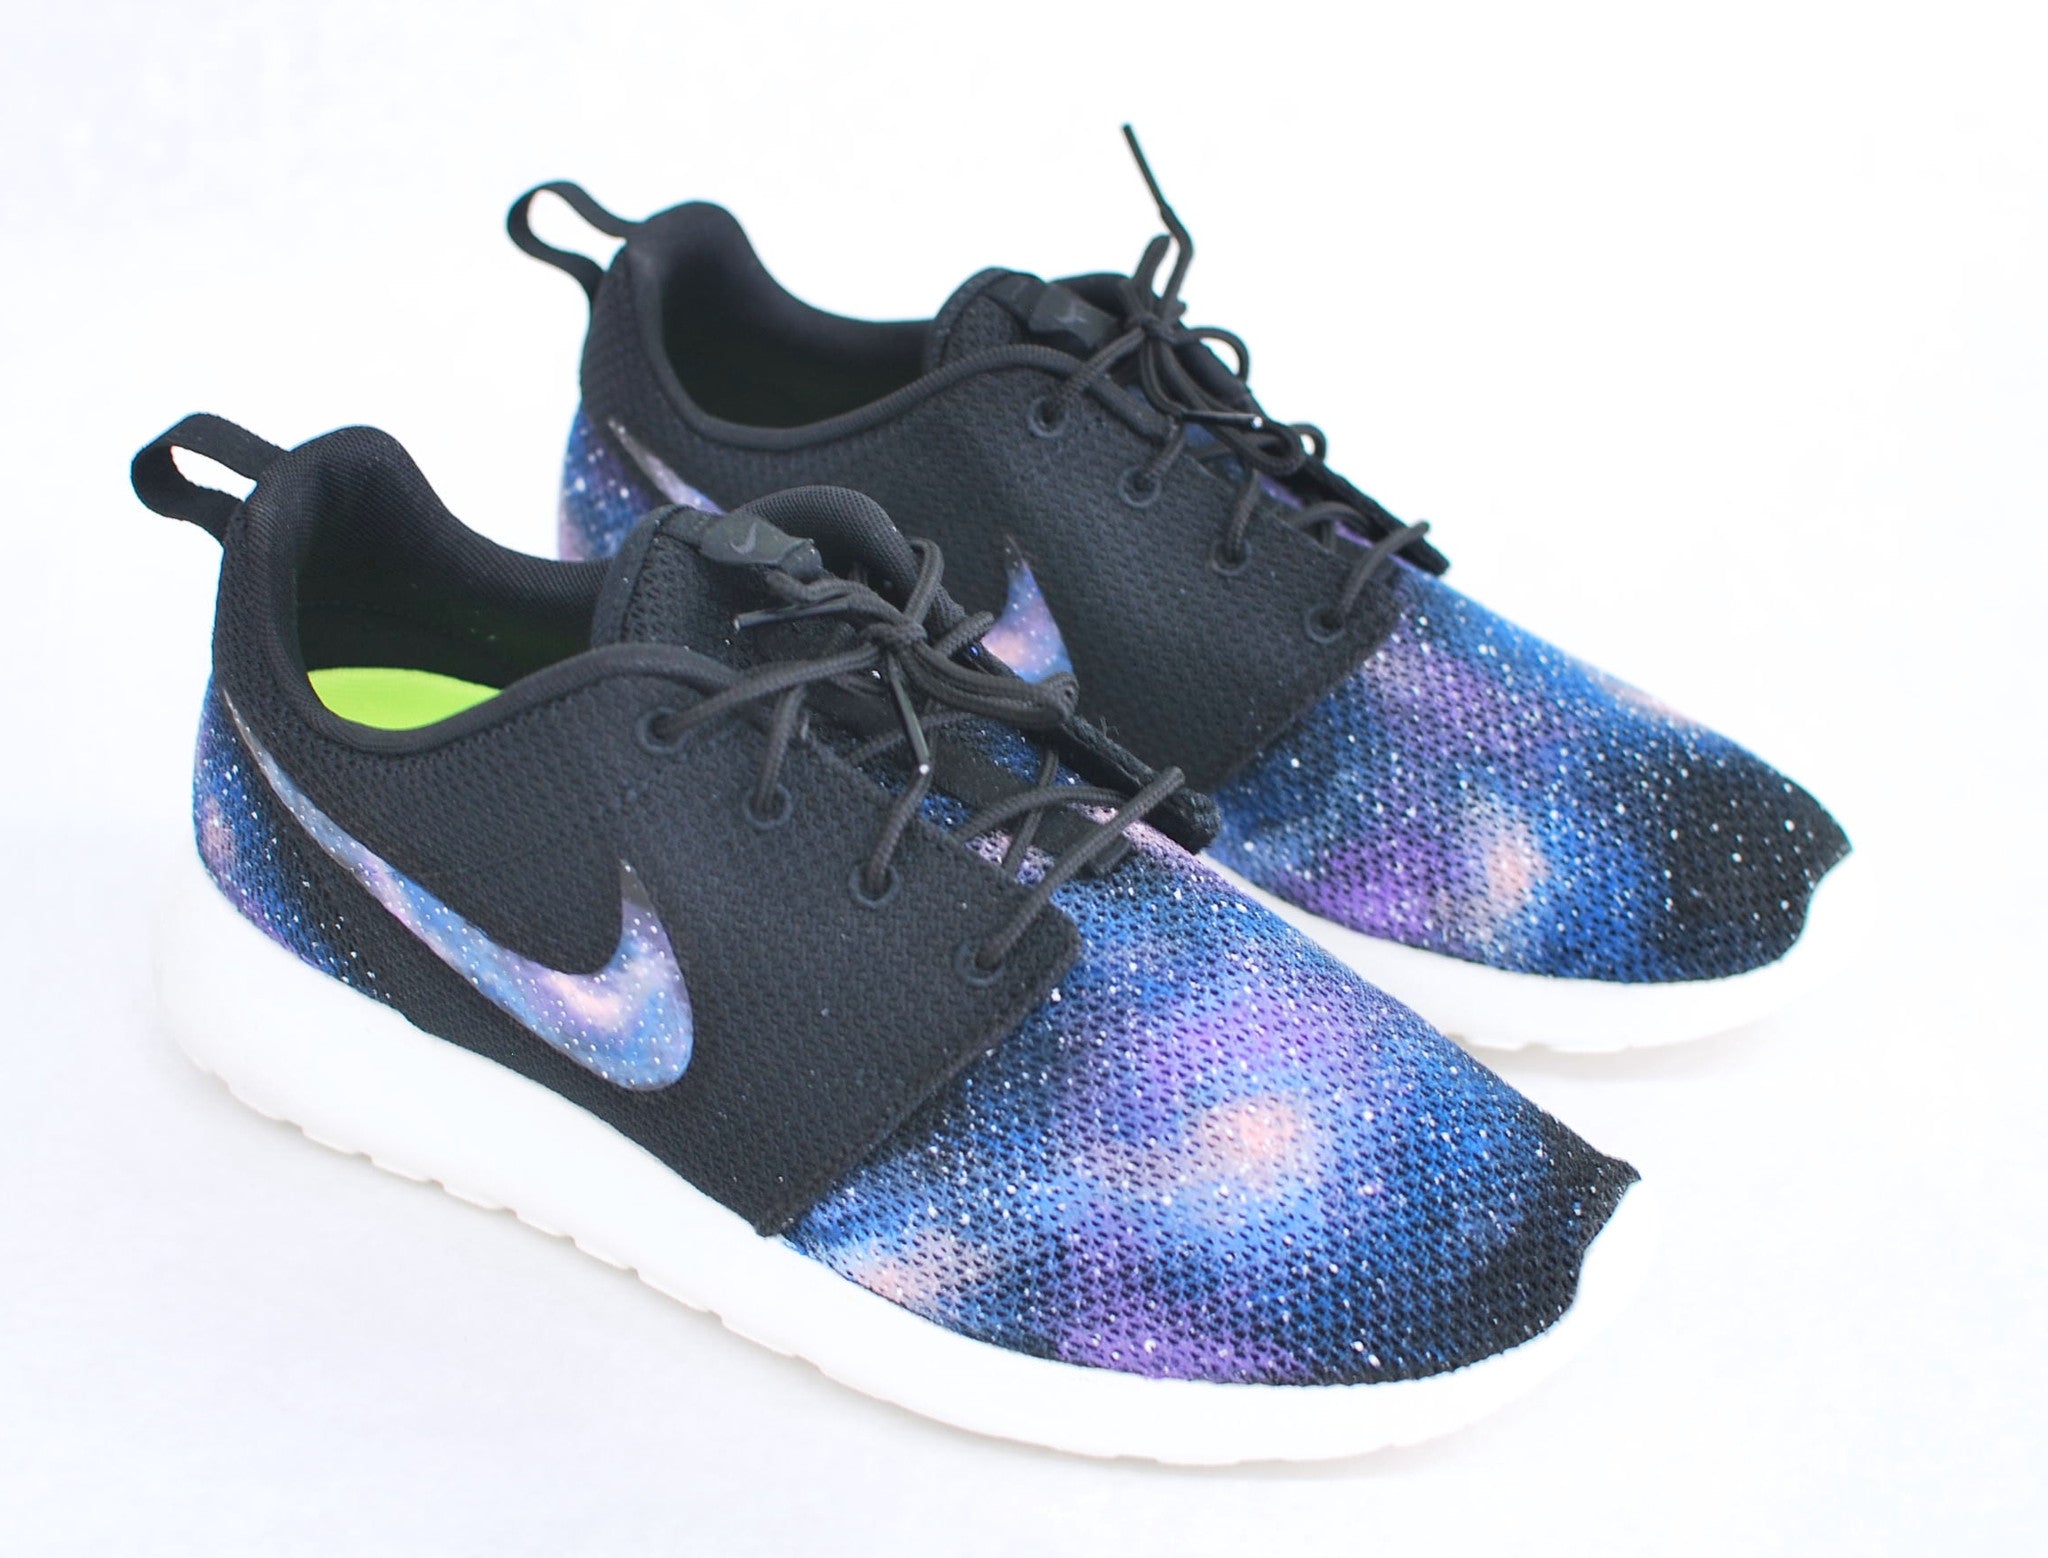 Bezighouden huurling Viool Custom Nike Roshe One - Hand Painted Galaxy Sneakers – B Street Shoes